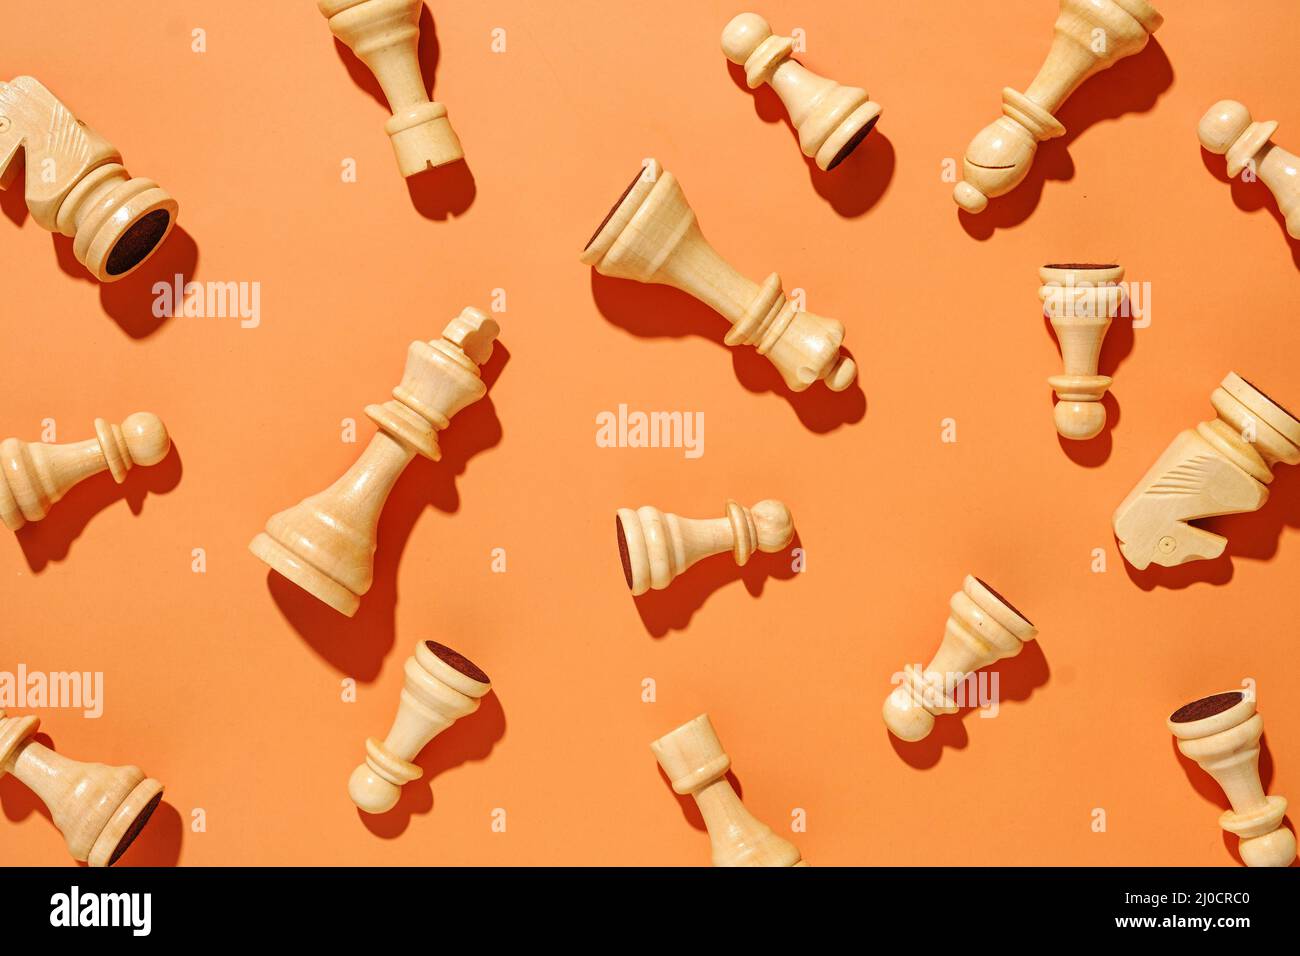 Motif de pièces d'échecs blanches sur fond orange. Concept minimal de conflit et de victoire dans la vie ou les affaires sportives. Banque D'Images